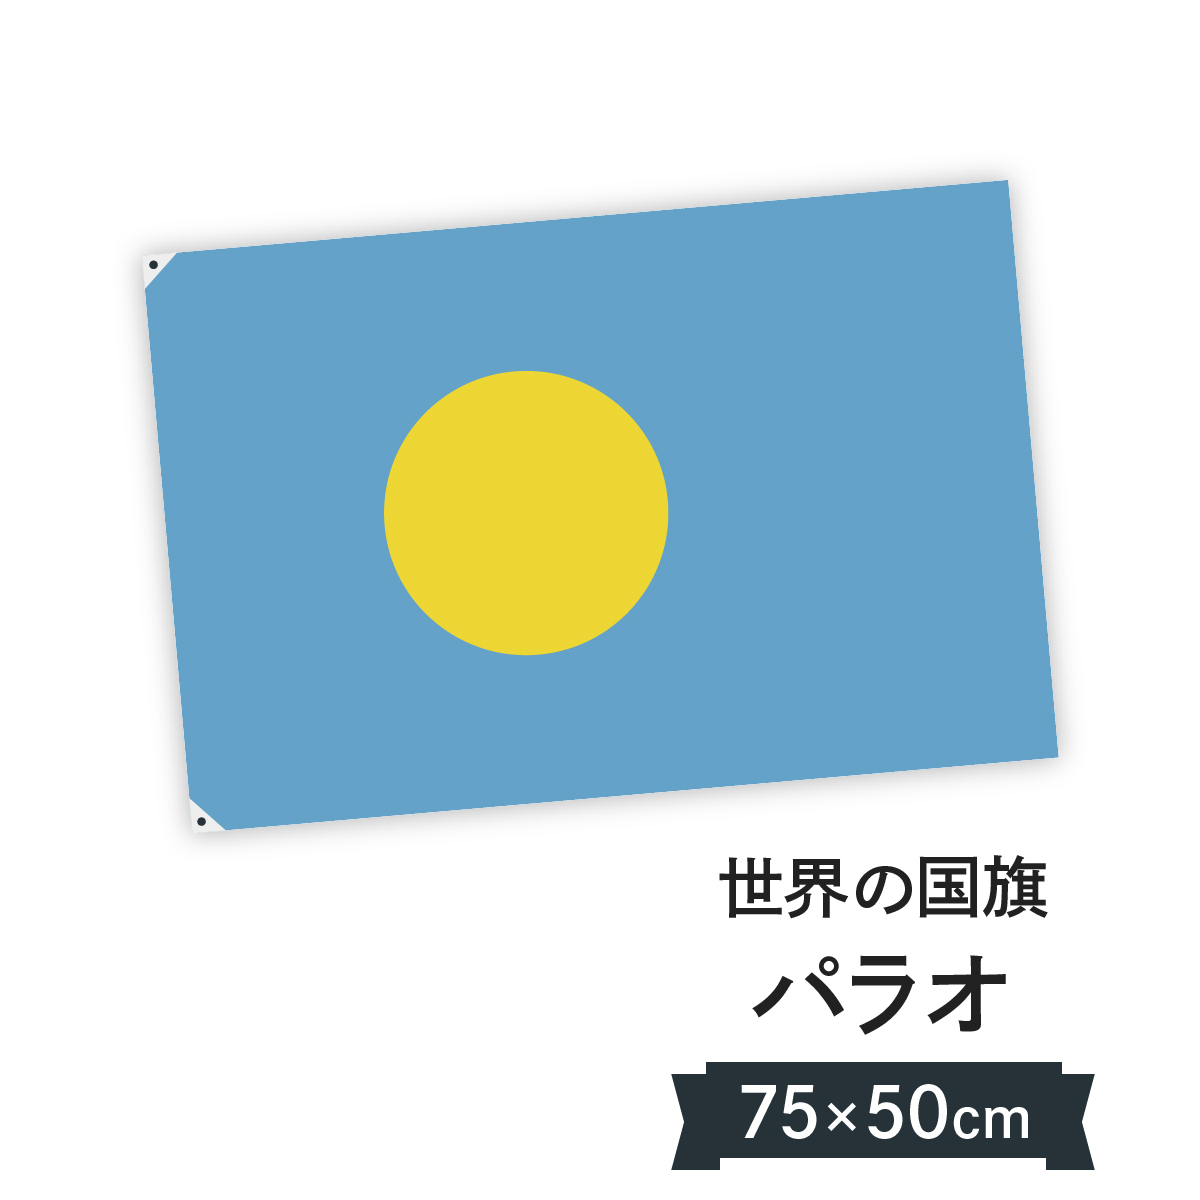 楽天市場 パラオ共和国 国旗 W75cm H50cm グッズプロ